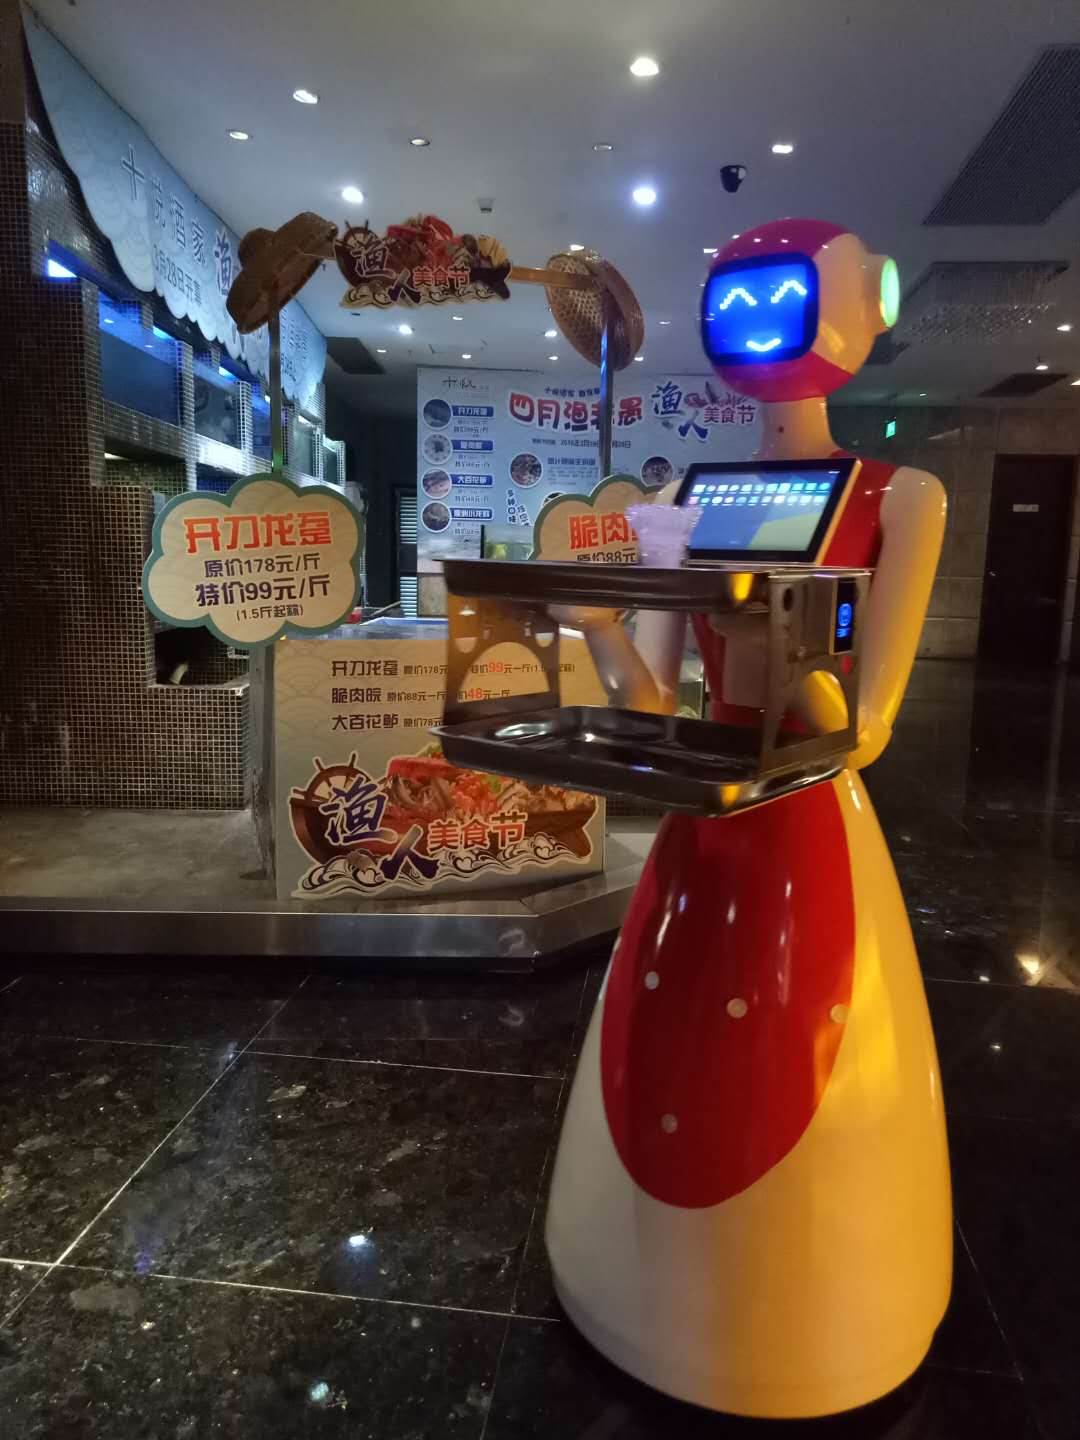 金亮德餐厅机器人JLDSC01送餐点餐 3